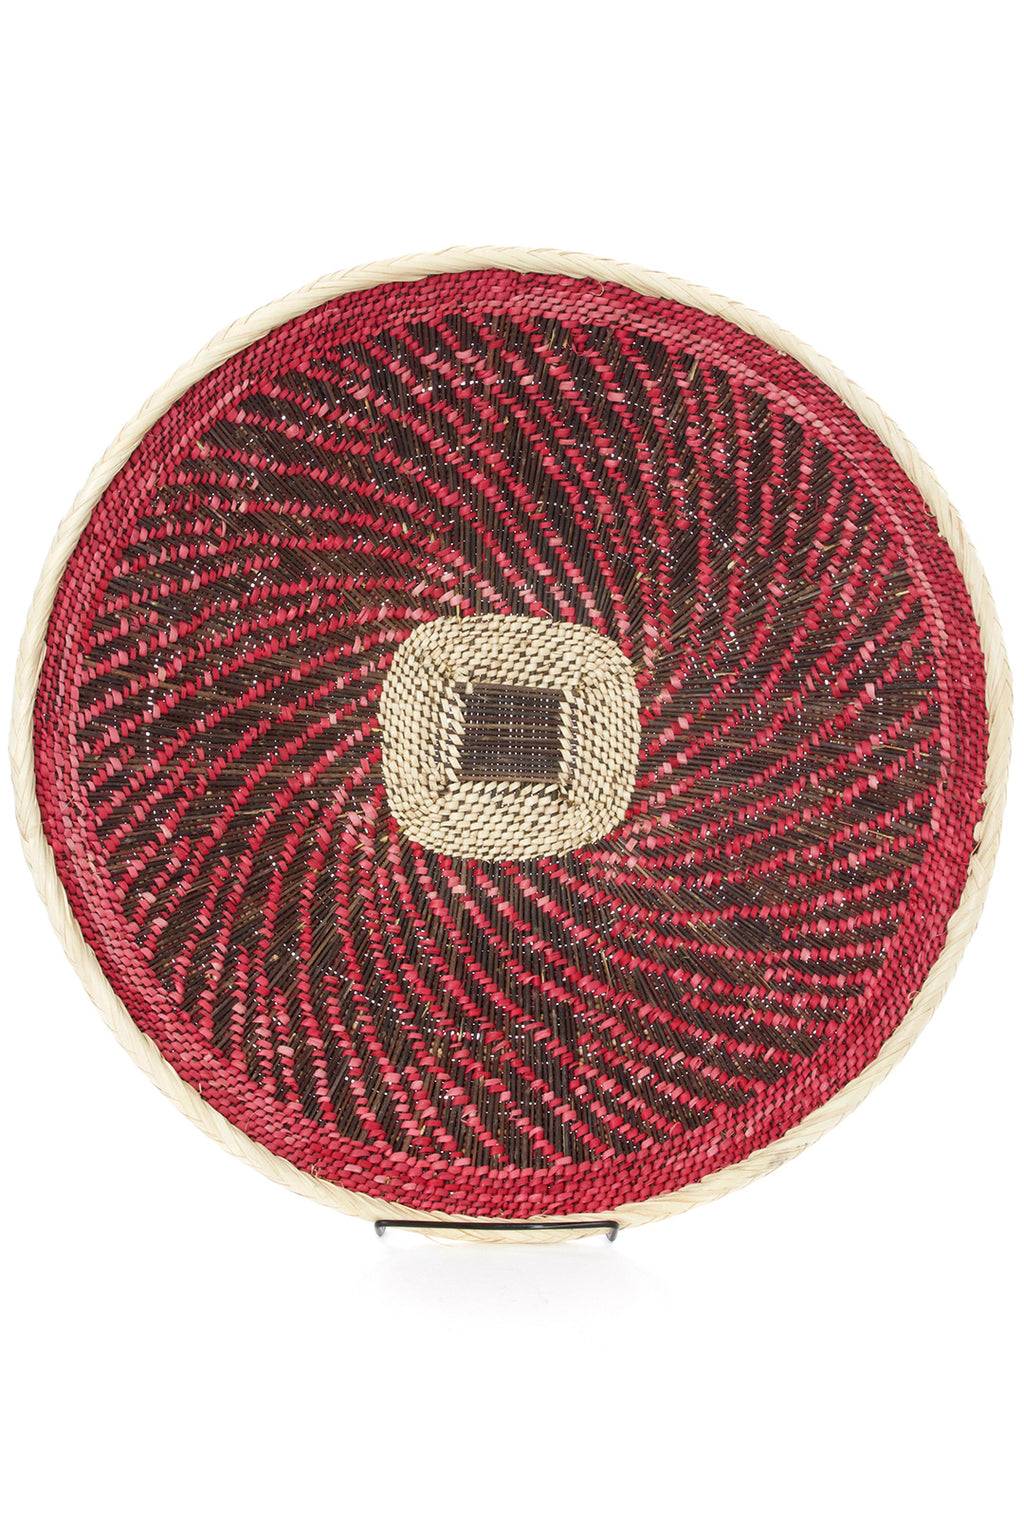 Large Pink Spiral Design BaTonga Wall Basket Default Title